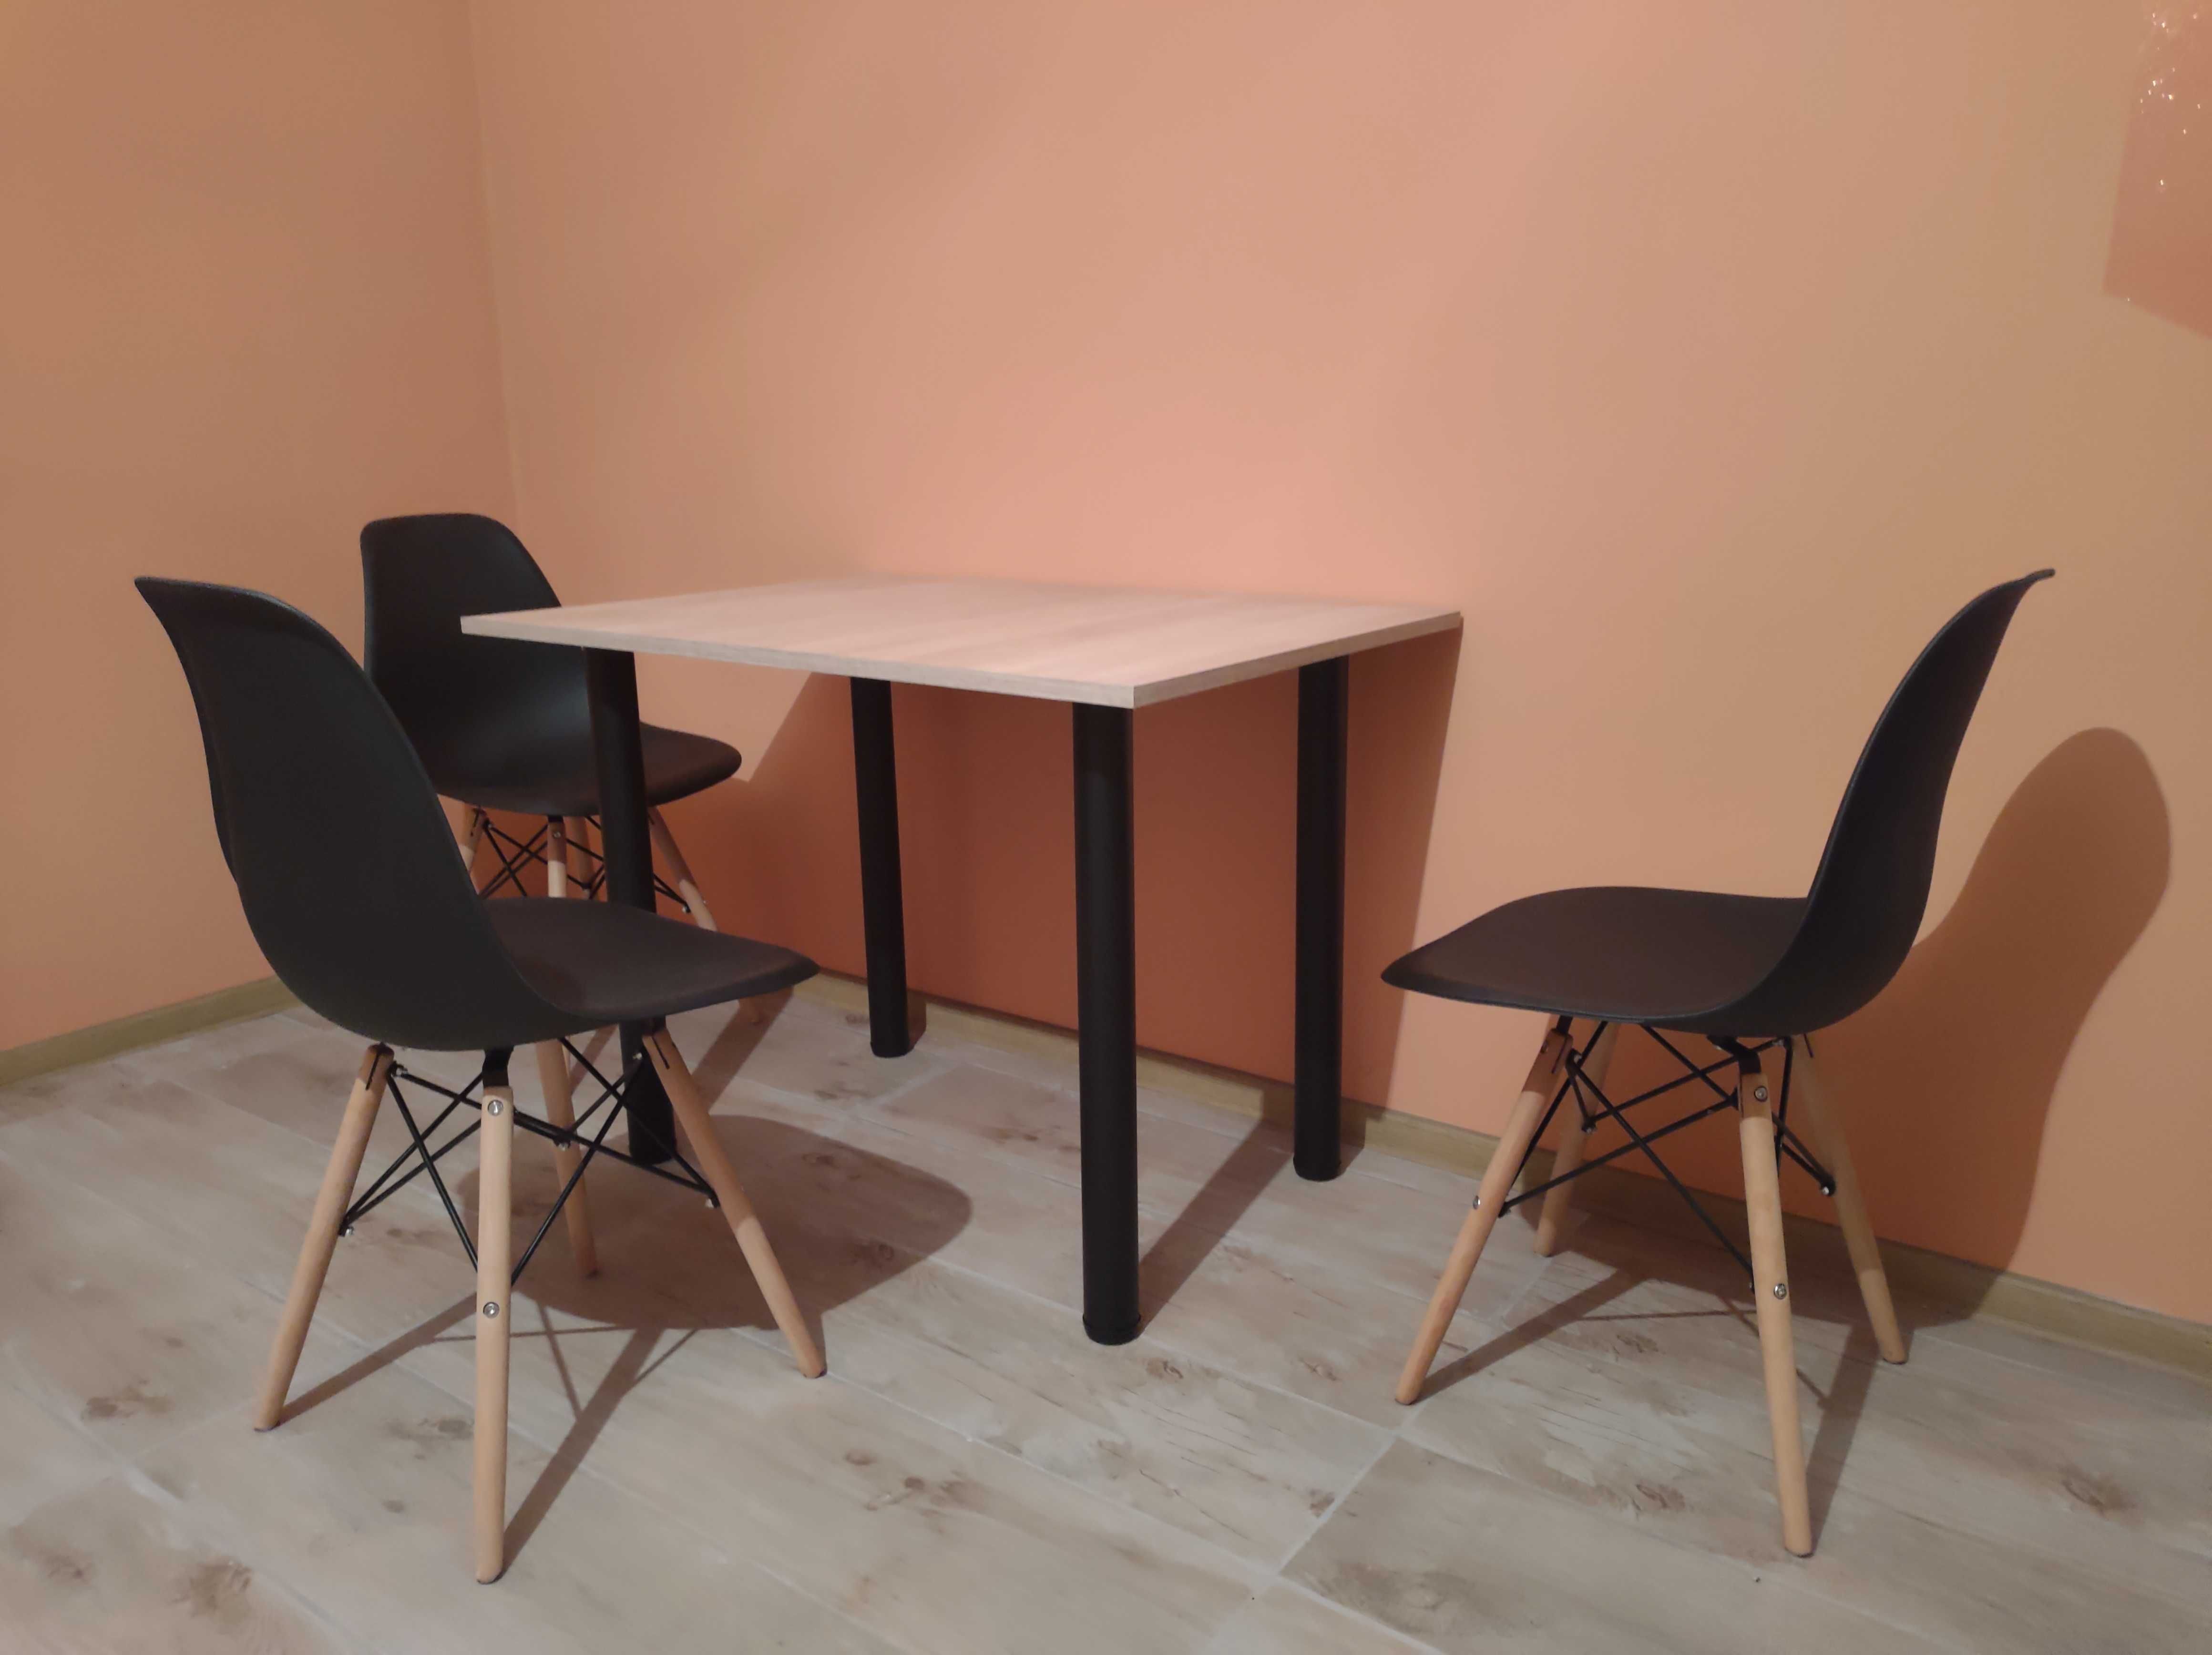 Stół stolik + 3 krzesła Hotelowy Kwatera pracownicza